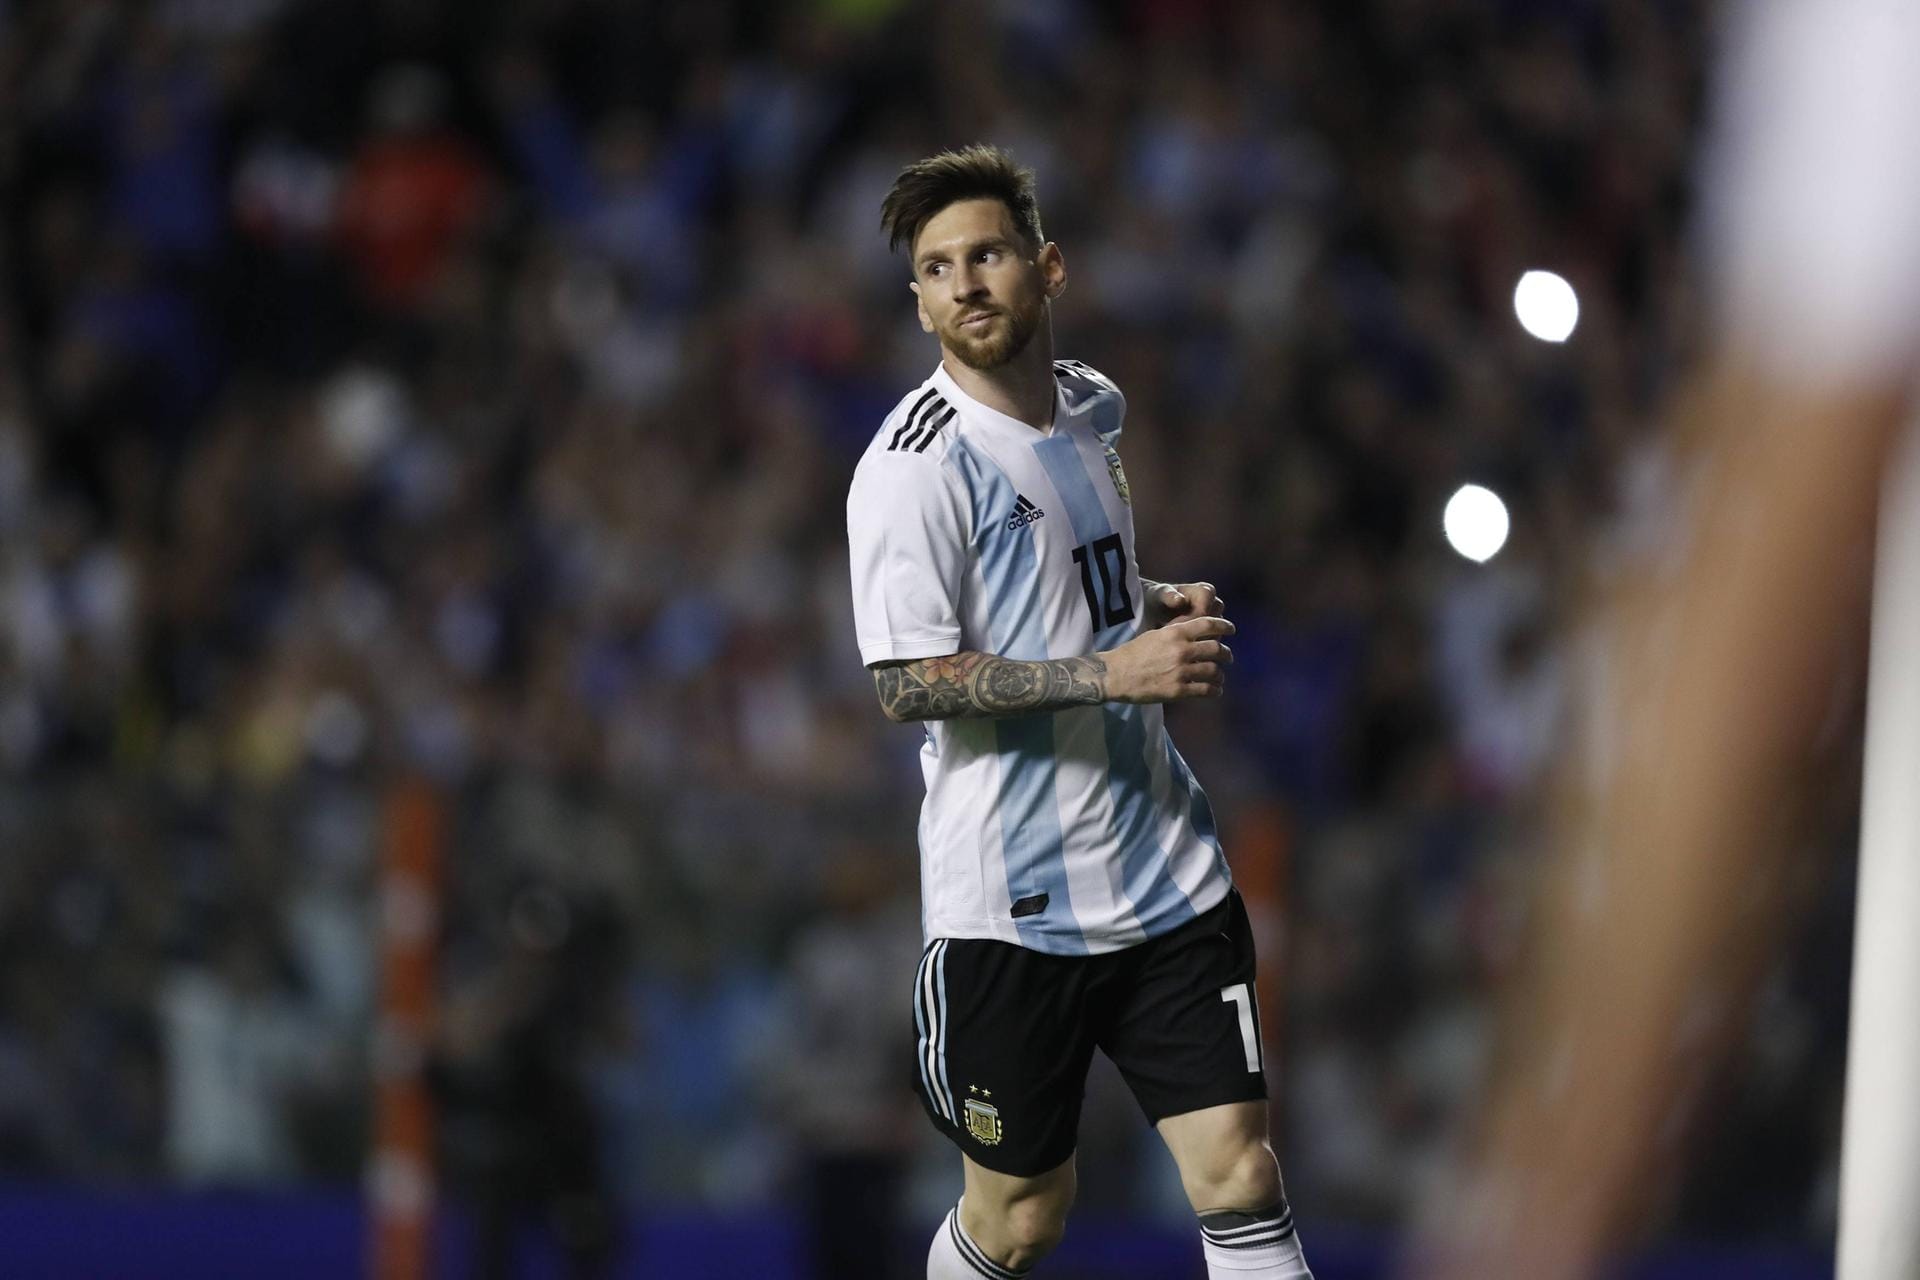 Lionel Messi (Argentinien): Der Ausnahmefußballer ist nicht nur in Argentinien ein Star. Der 30-jährige hat in 124 Länderspielen 64 Tore erzielt. Seit 2005 kickt der weltbeste Dribbler für den FC Barcelona.